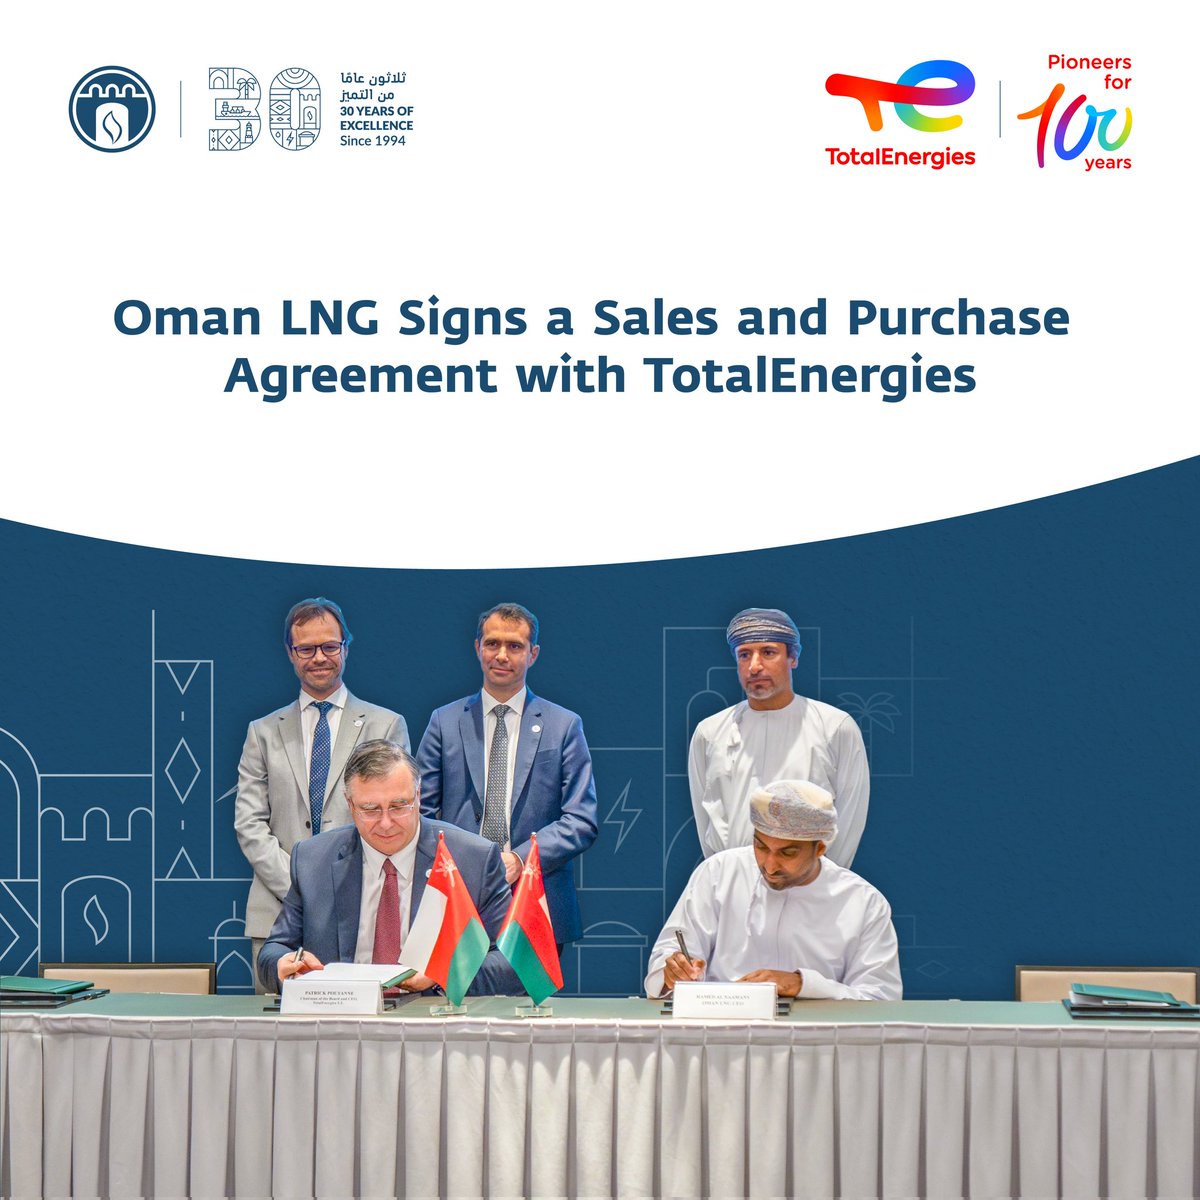 وقعت الشركة العمانية للغاز الطبيعي المسال اتفاقية بيع وشراء مع شركة توتال إنرجيز بهدف تصدير 0.8 مليون طن متري سنويًا من الغاز الطبيعي المسال. تعكس هذه الاتفاقية جهود الشركة في دعم الاقتصاد الوطني من خلال تصدير الغاز الطبيعي المسال من سلطنة عمان للأسواق العالمية. Oman LNG has…